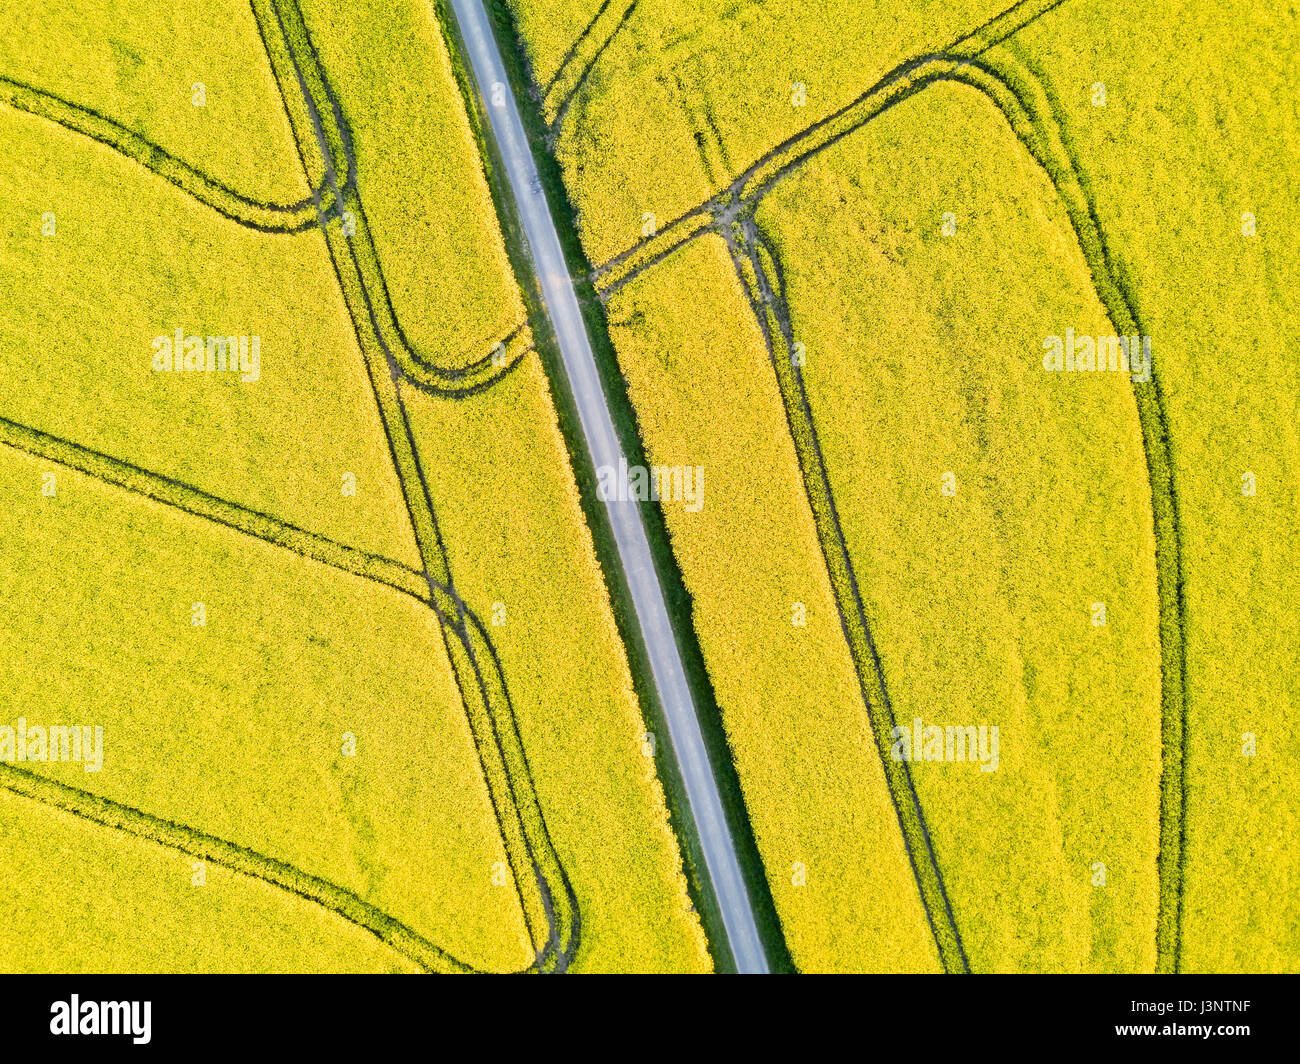 Hermoso top-down drone vista aérea del campo de colza amarillas flores con una carretera y geométrico de las orugas del tractor Foto de stock